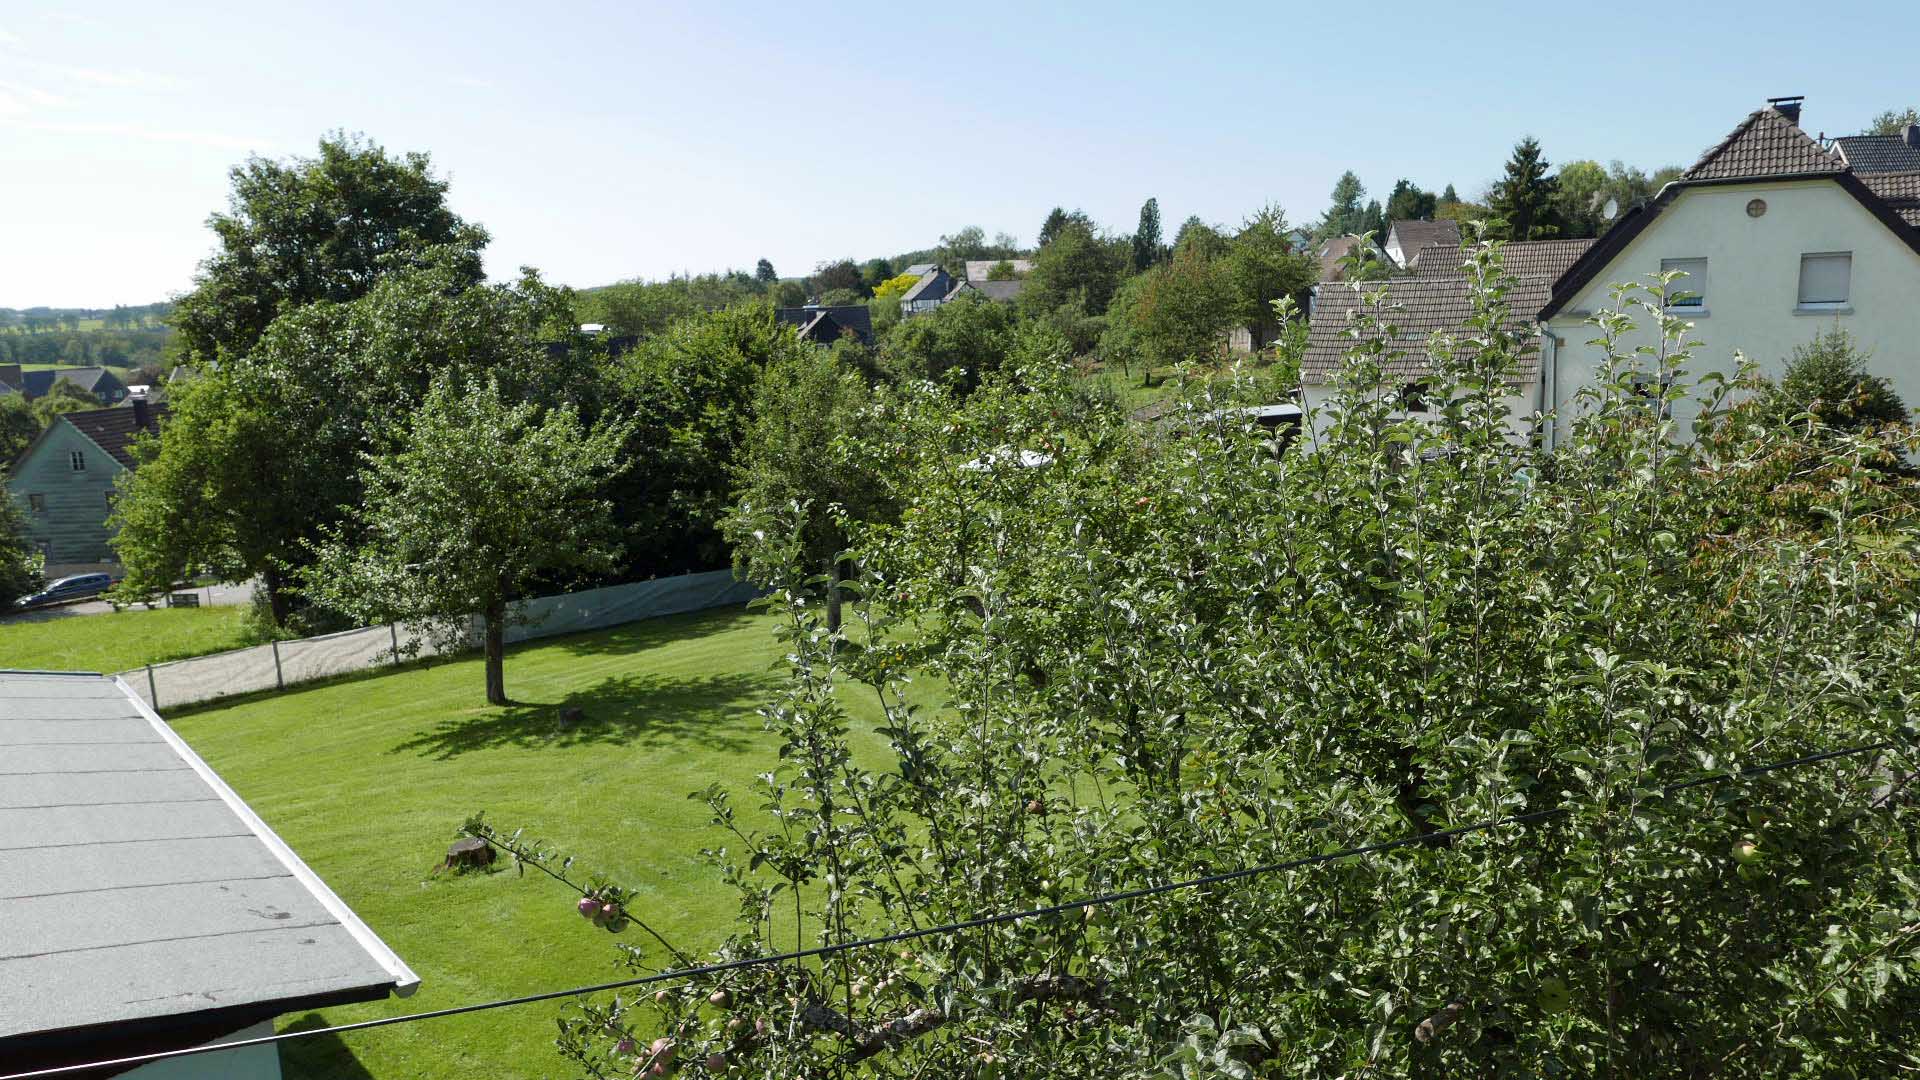 Morsbach-Steimelhagen: Eckgrundstück in guter, ruhiger Wohnlage, ca. 720 m² Baugrundstück mit sieben Obstbäumen